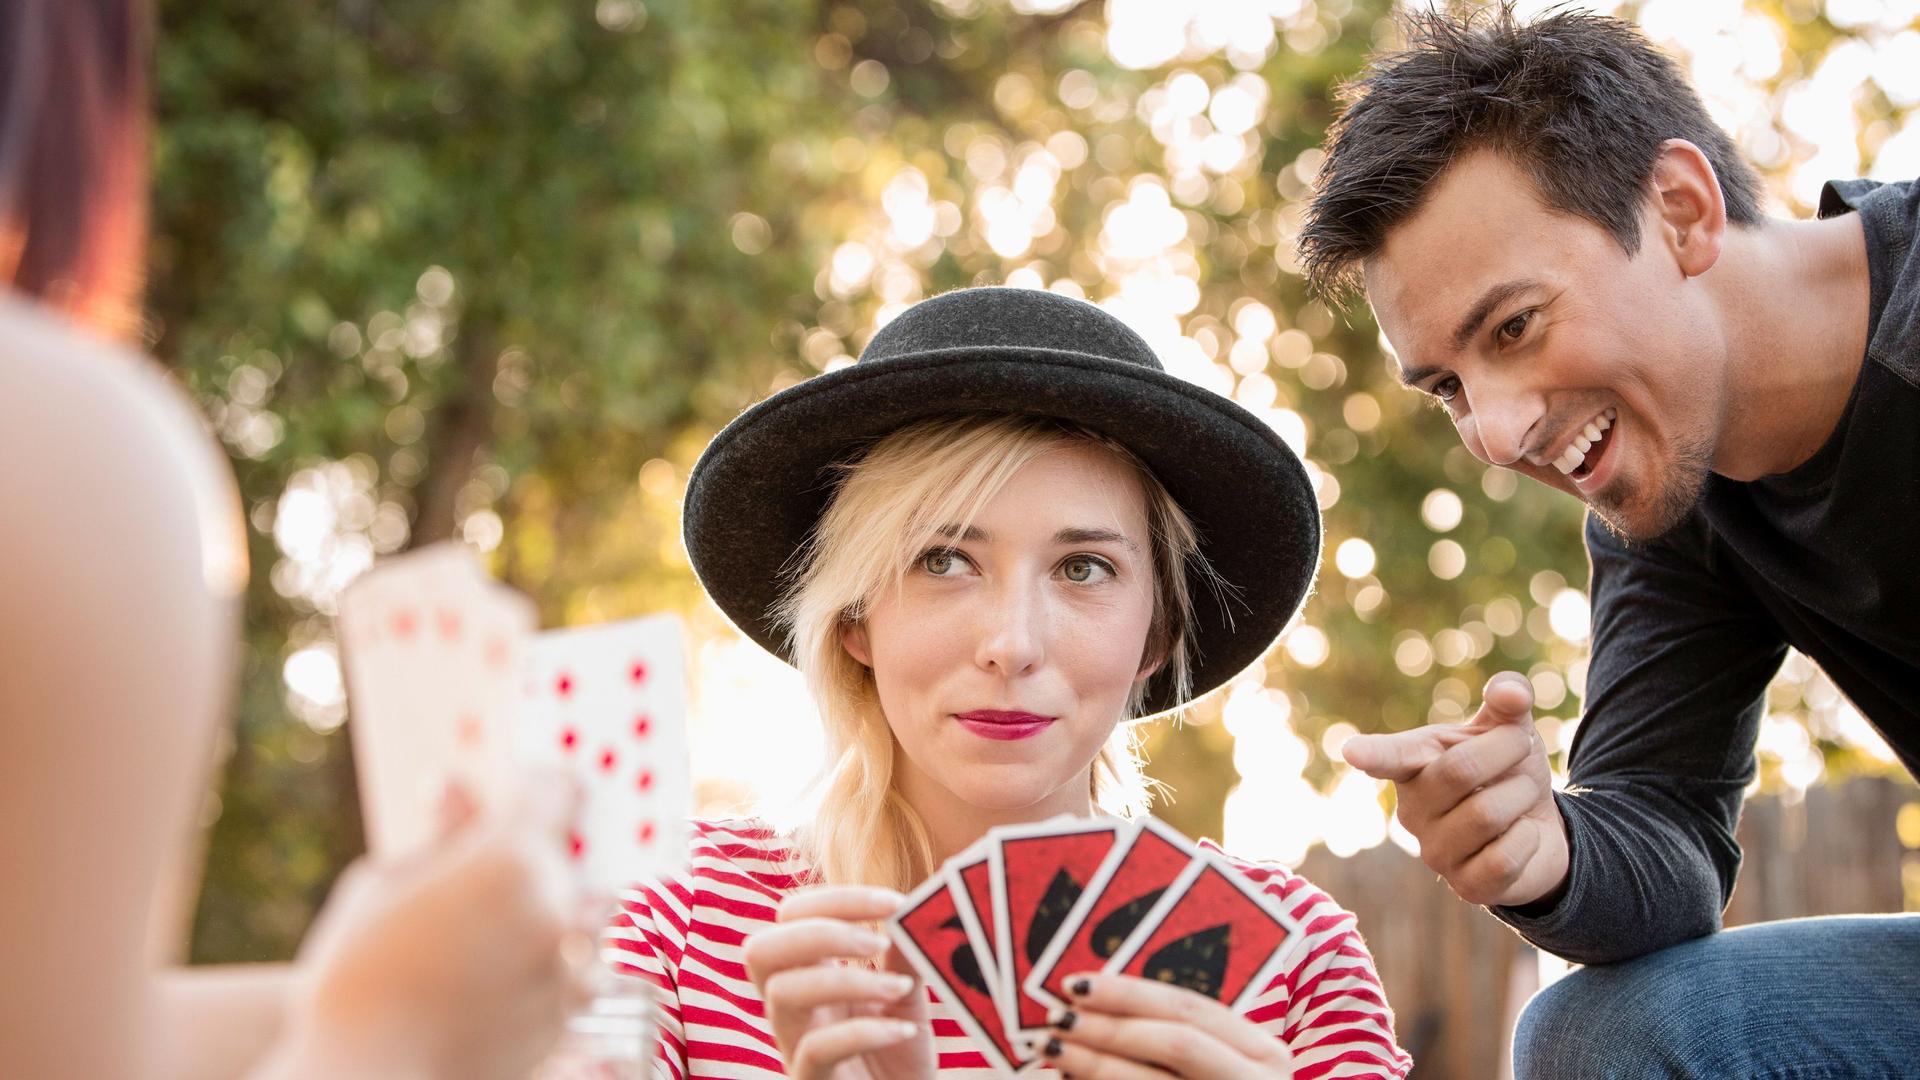 Zwei junge Frauen spielen Karten im Park. Ein Mann sitzt neben ihnen und kommentiert die Karten.